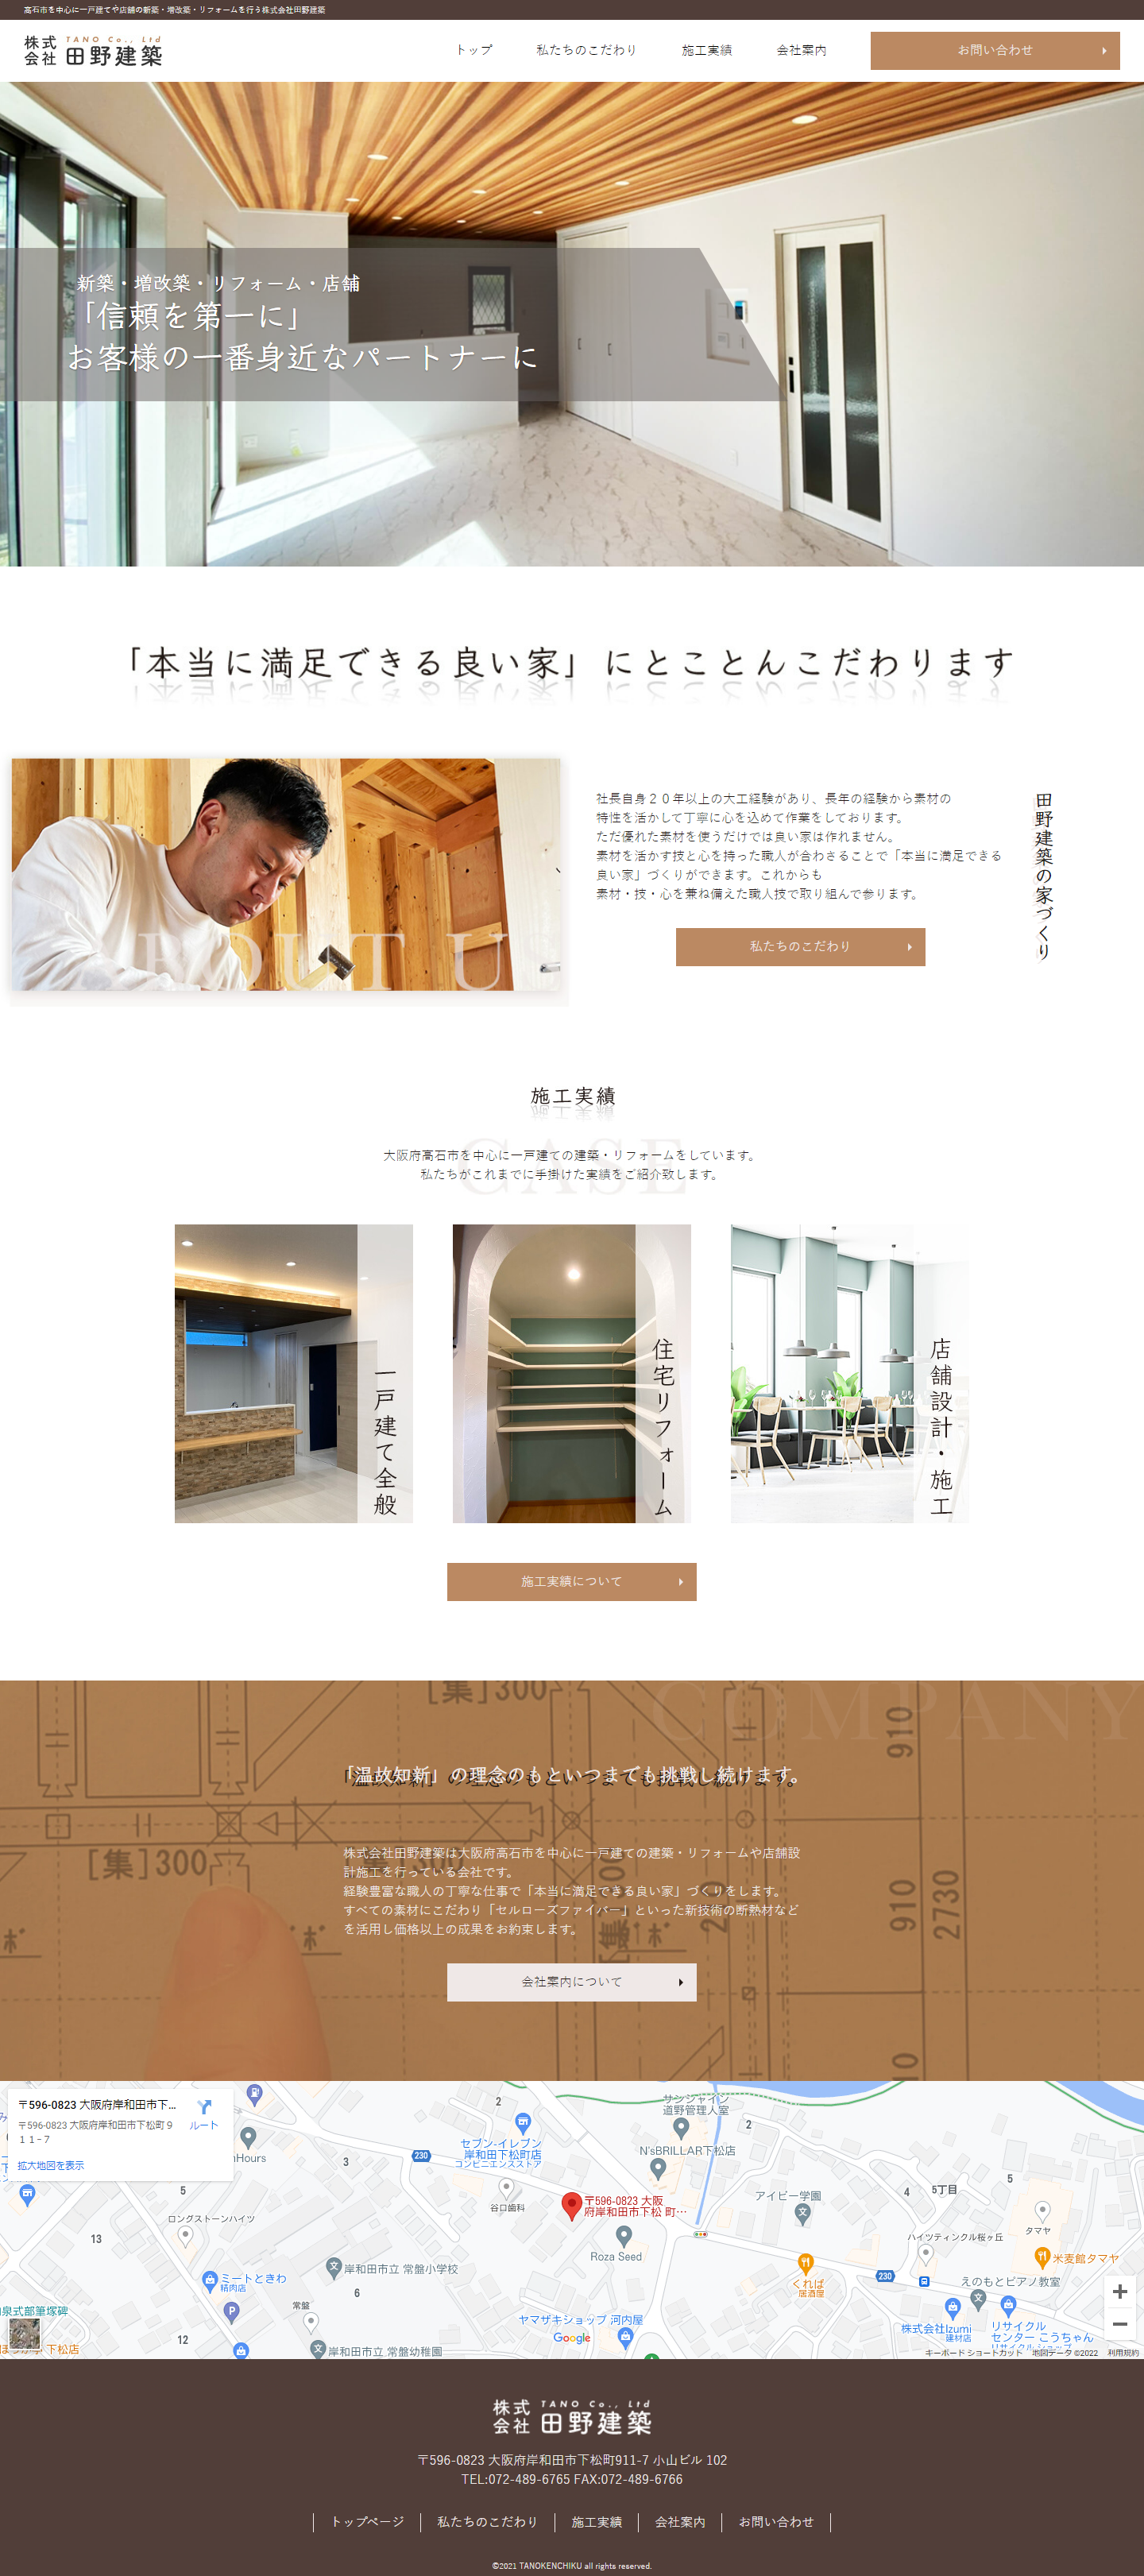 株式会社田野建築 コーポレートサイト：大阪のホームページ制作会社アップポイントの制作例